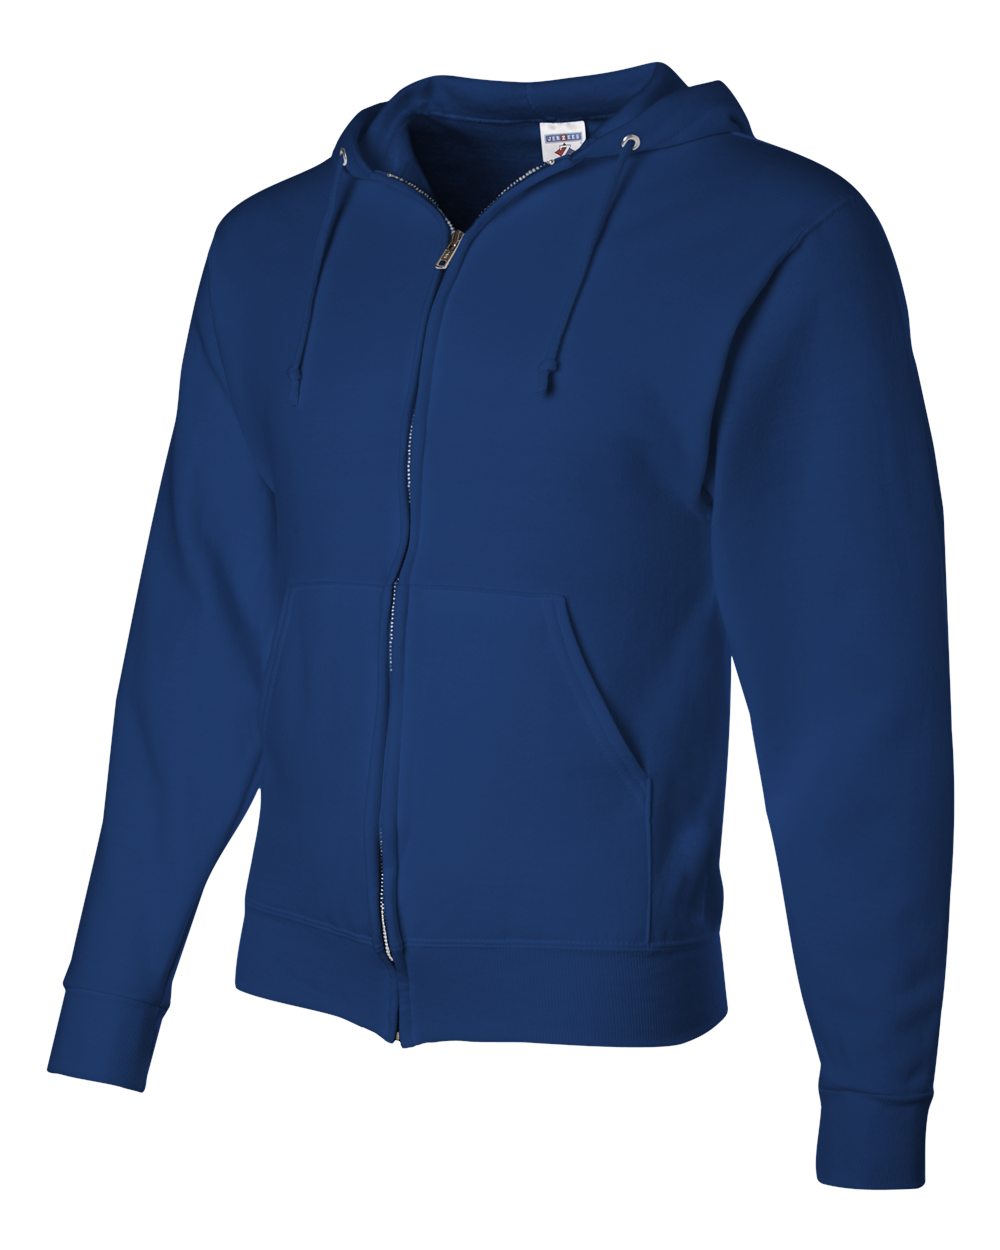 Download Jerzees NuBlend Full-Zip Hooded Sweatshirt - SHIRT PRINTING 4U